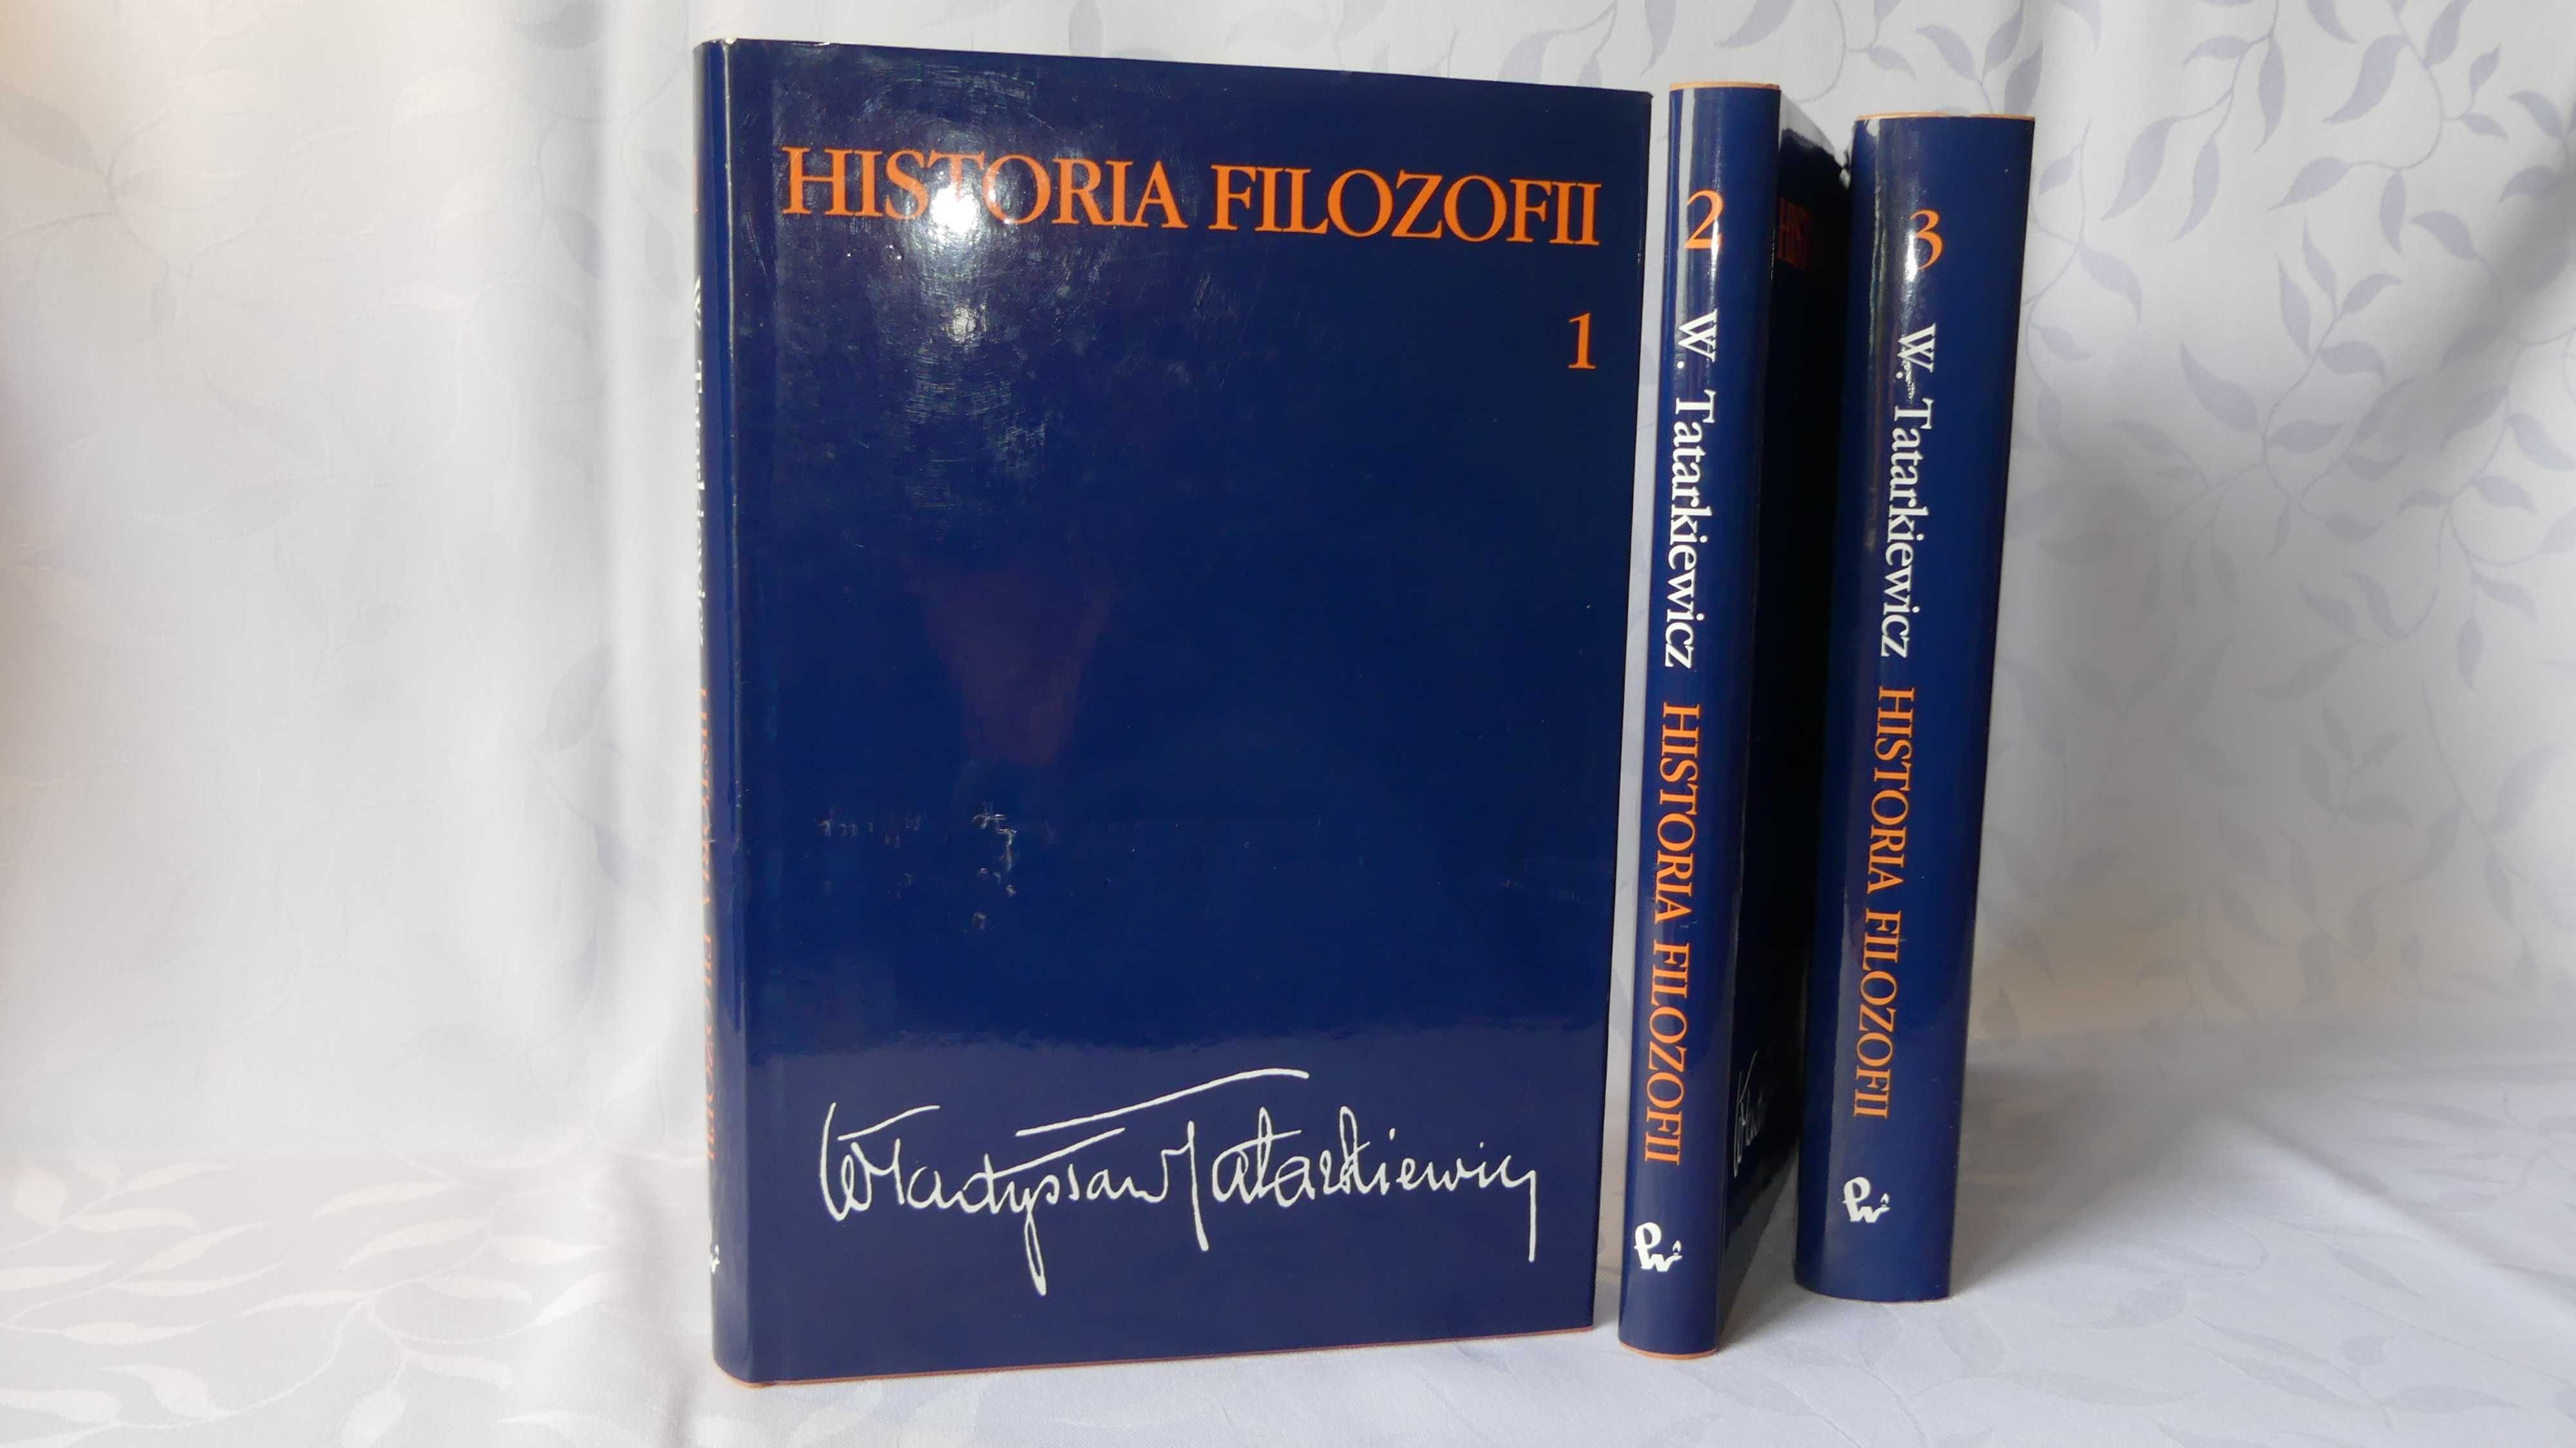 Historia Filozofii, Władysław Tatarkiewicz - wszystkie tomy, tom 1,2,3